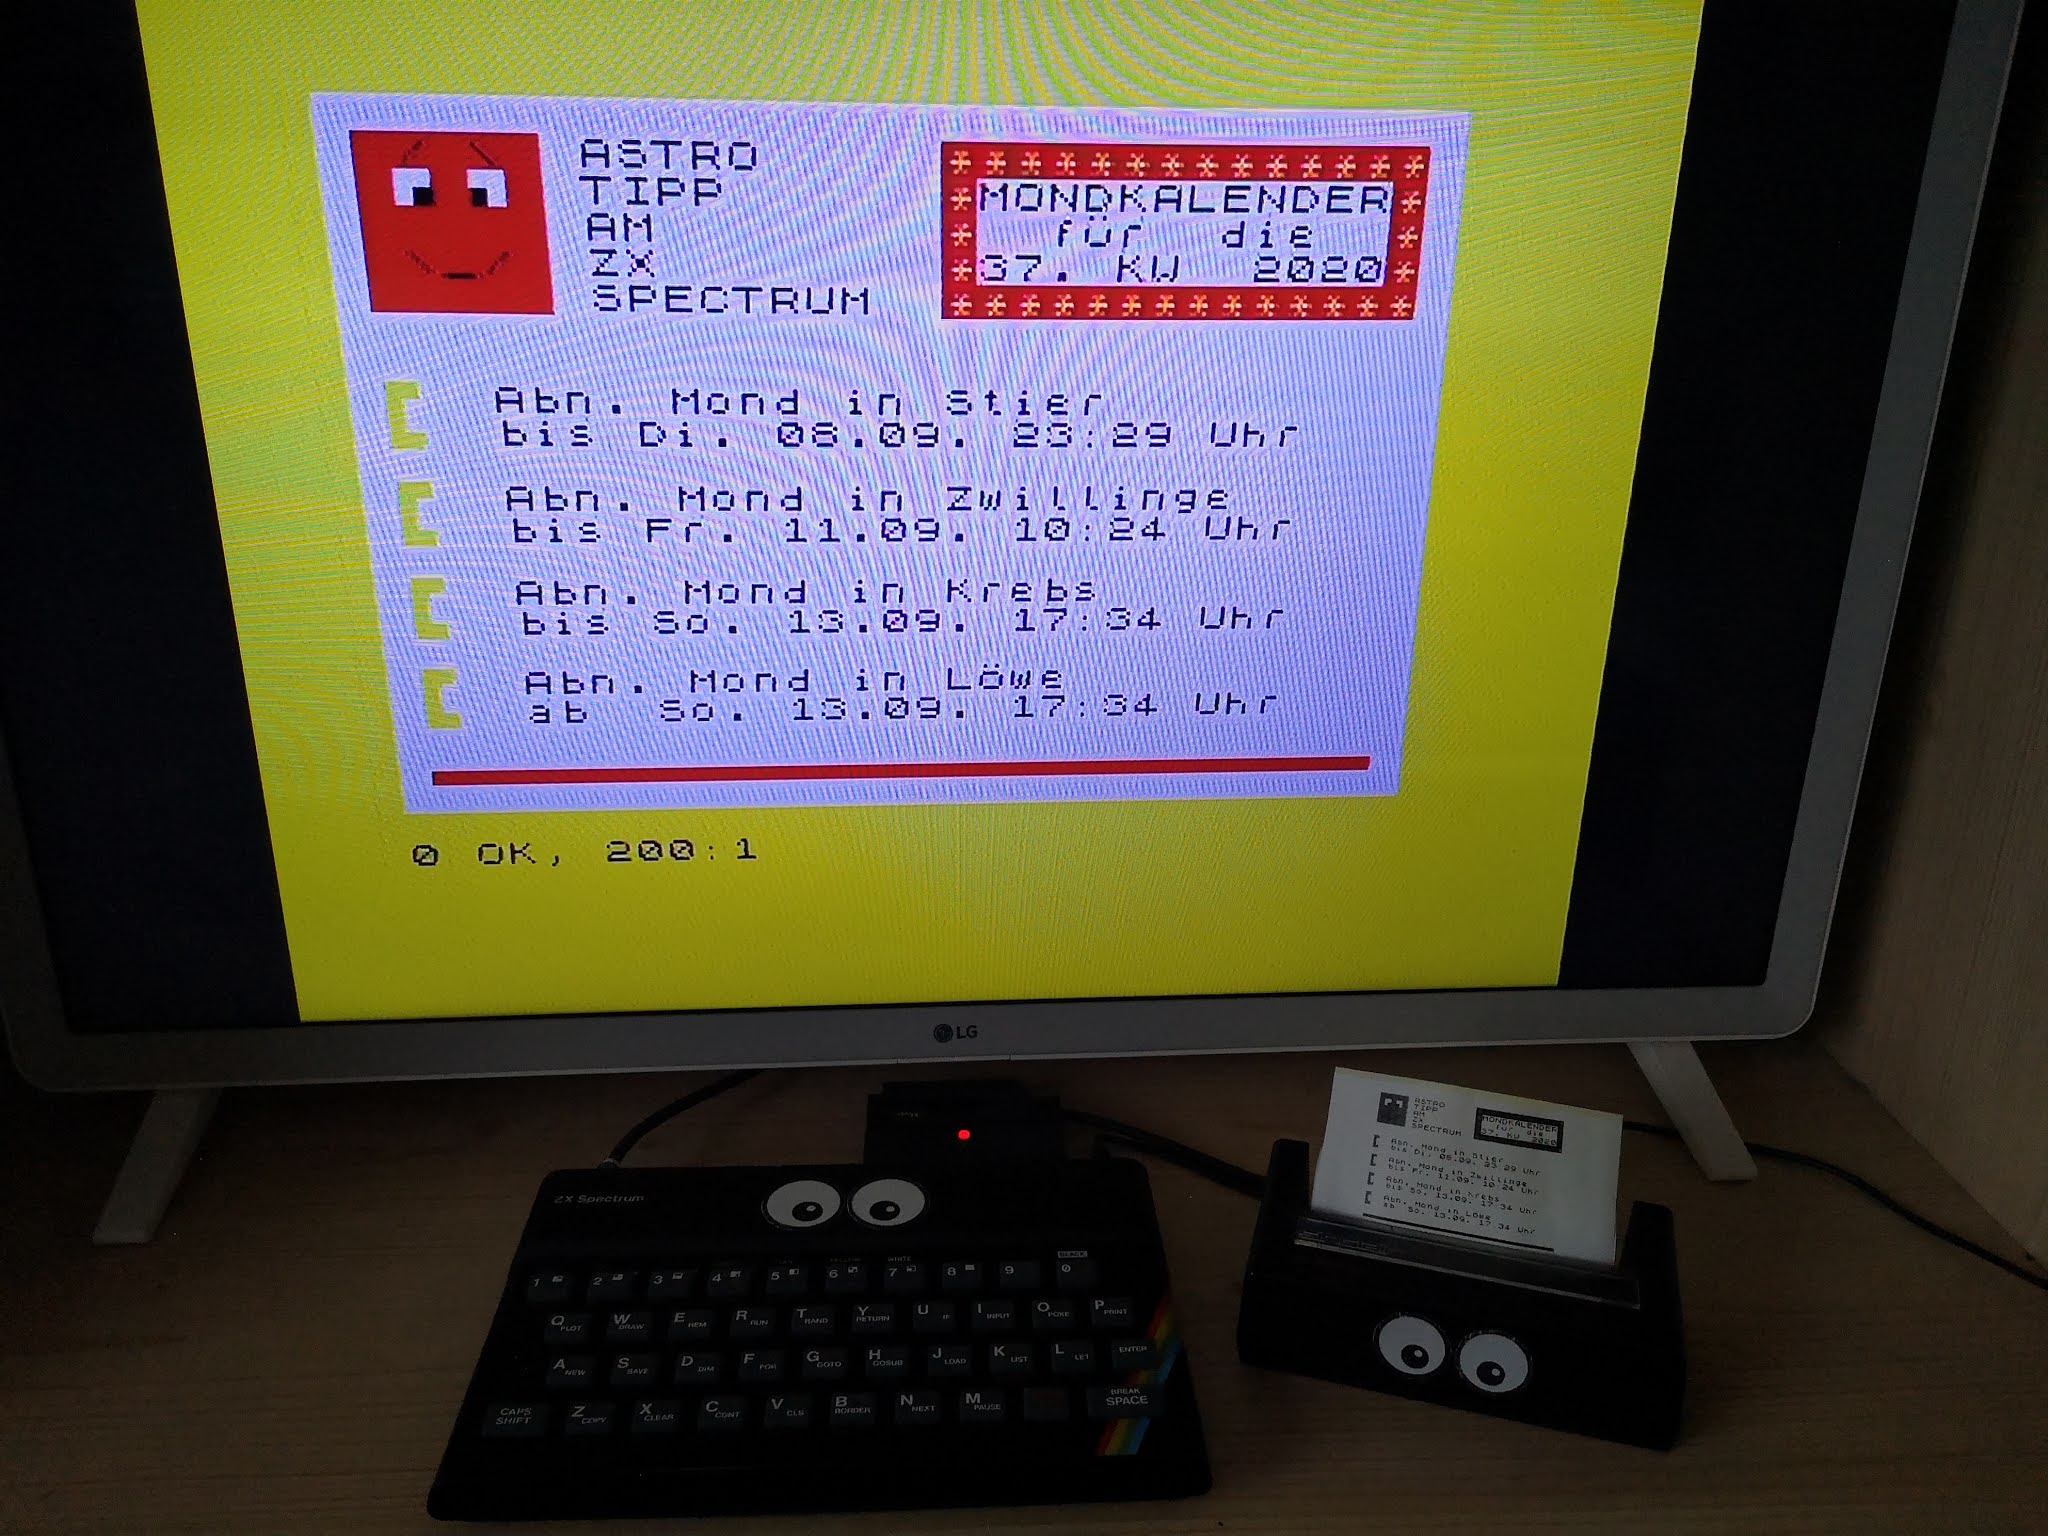 Mondkalender dieser Kalenderwoche am ZX Spectrum und ZX Printer